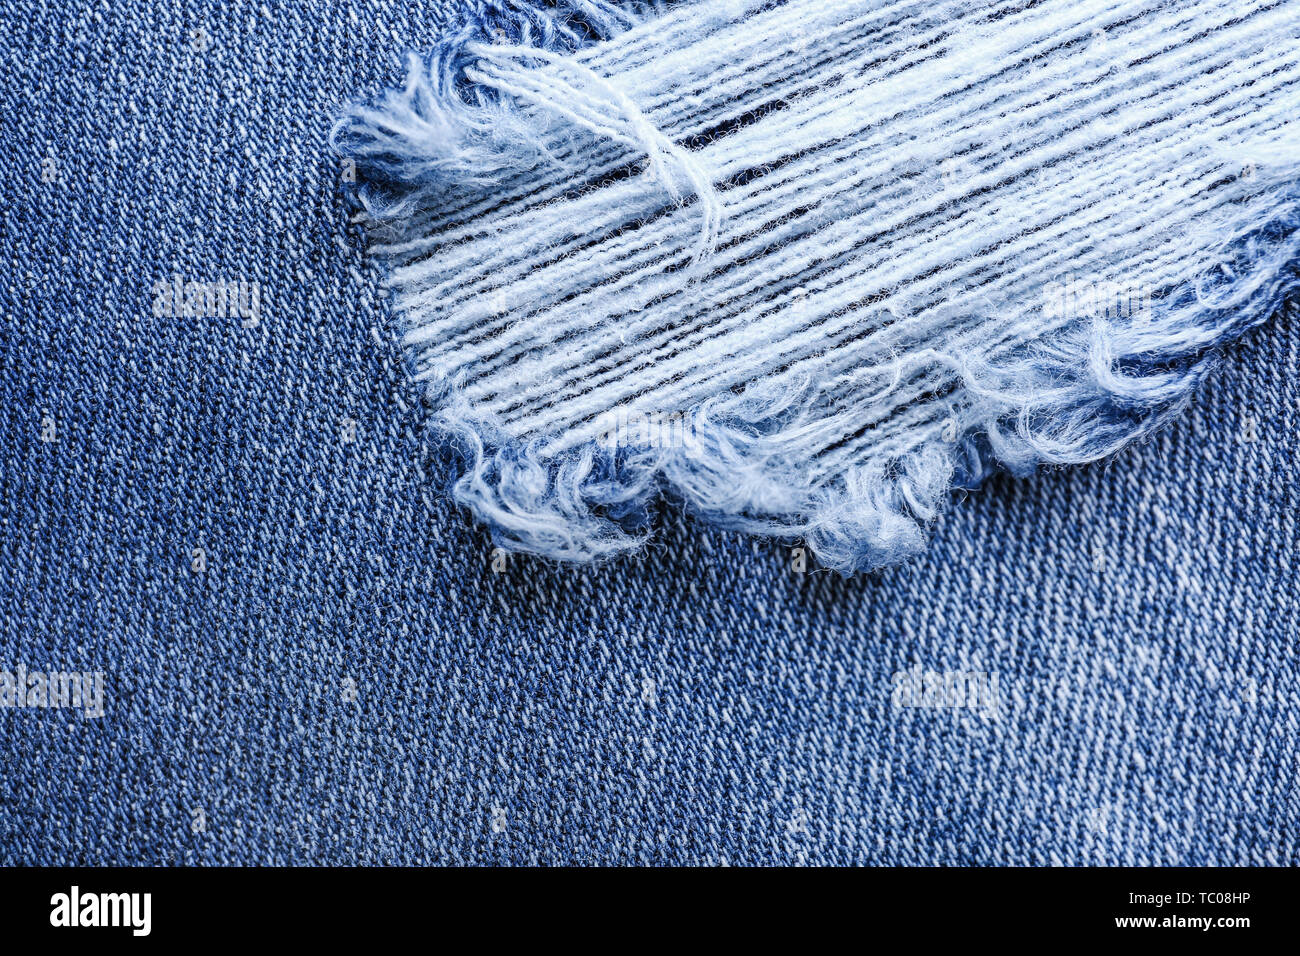 Stylish ripped jeans, closeup view Stock Photo - Alamy